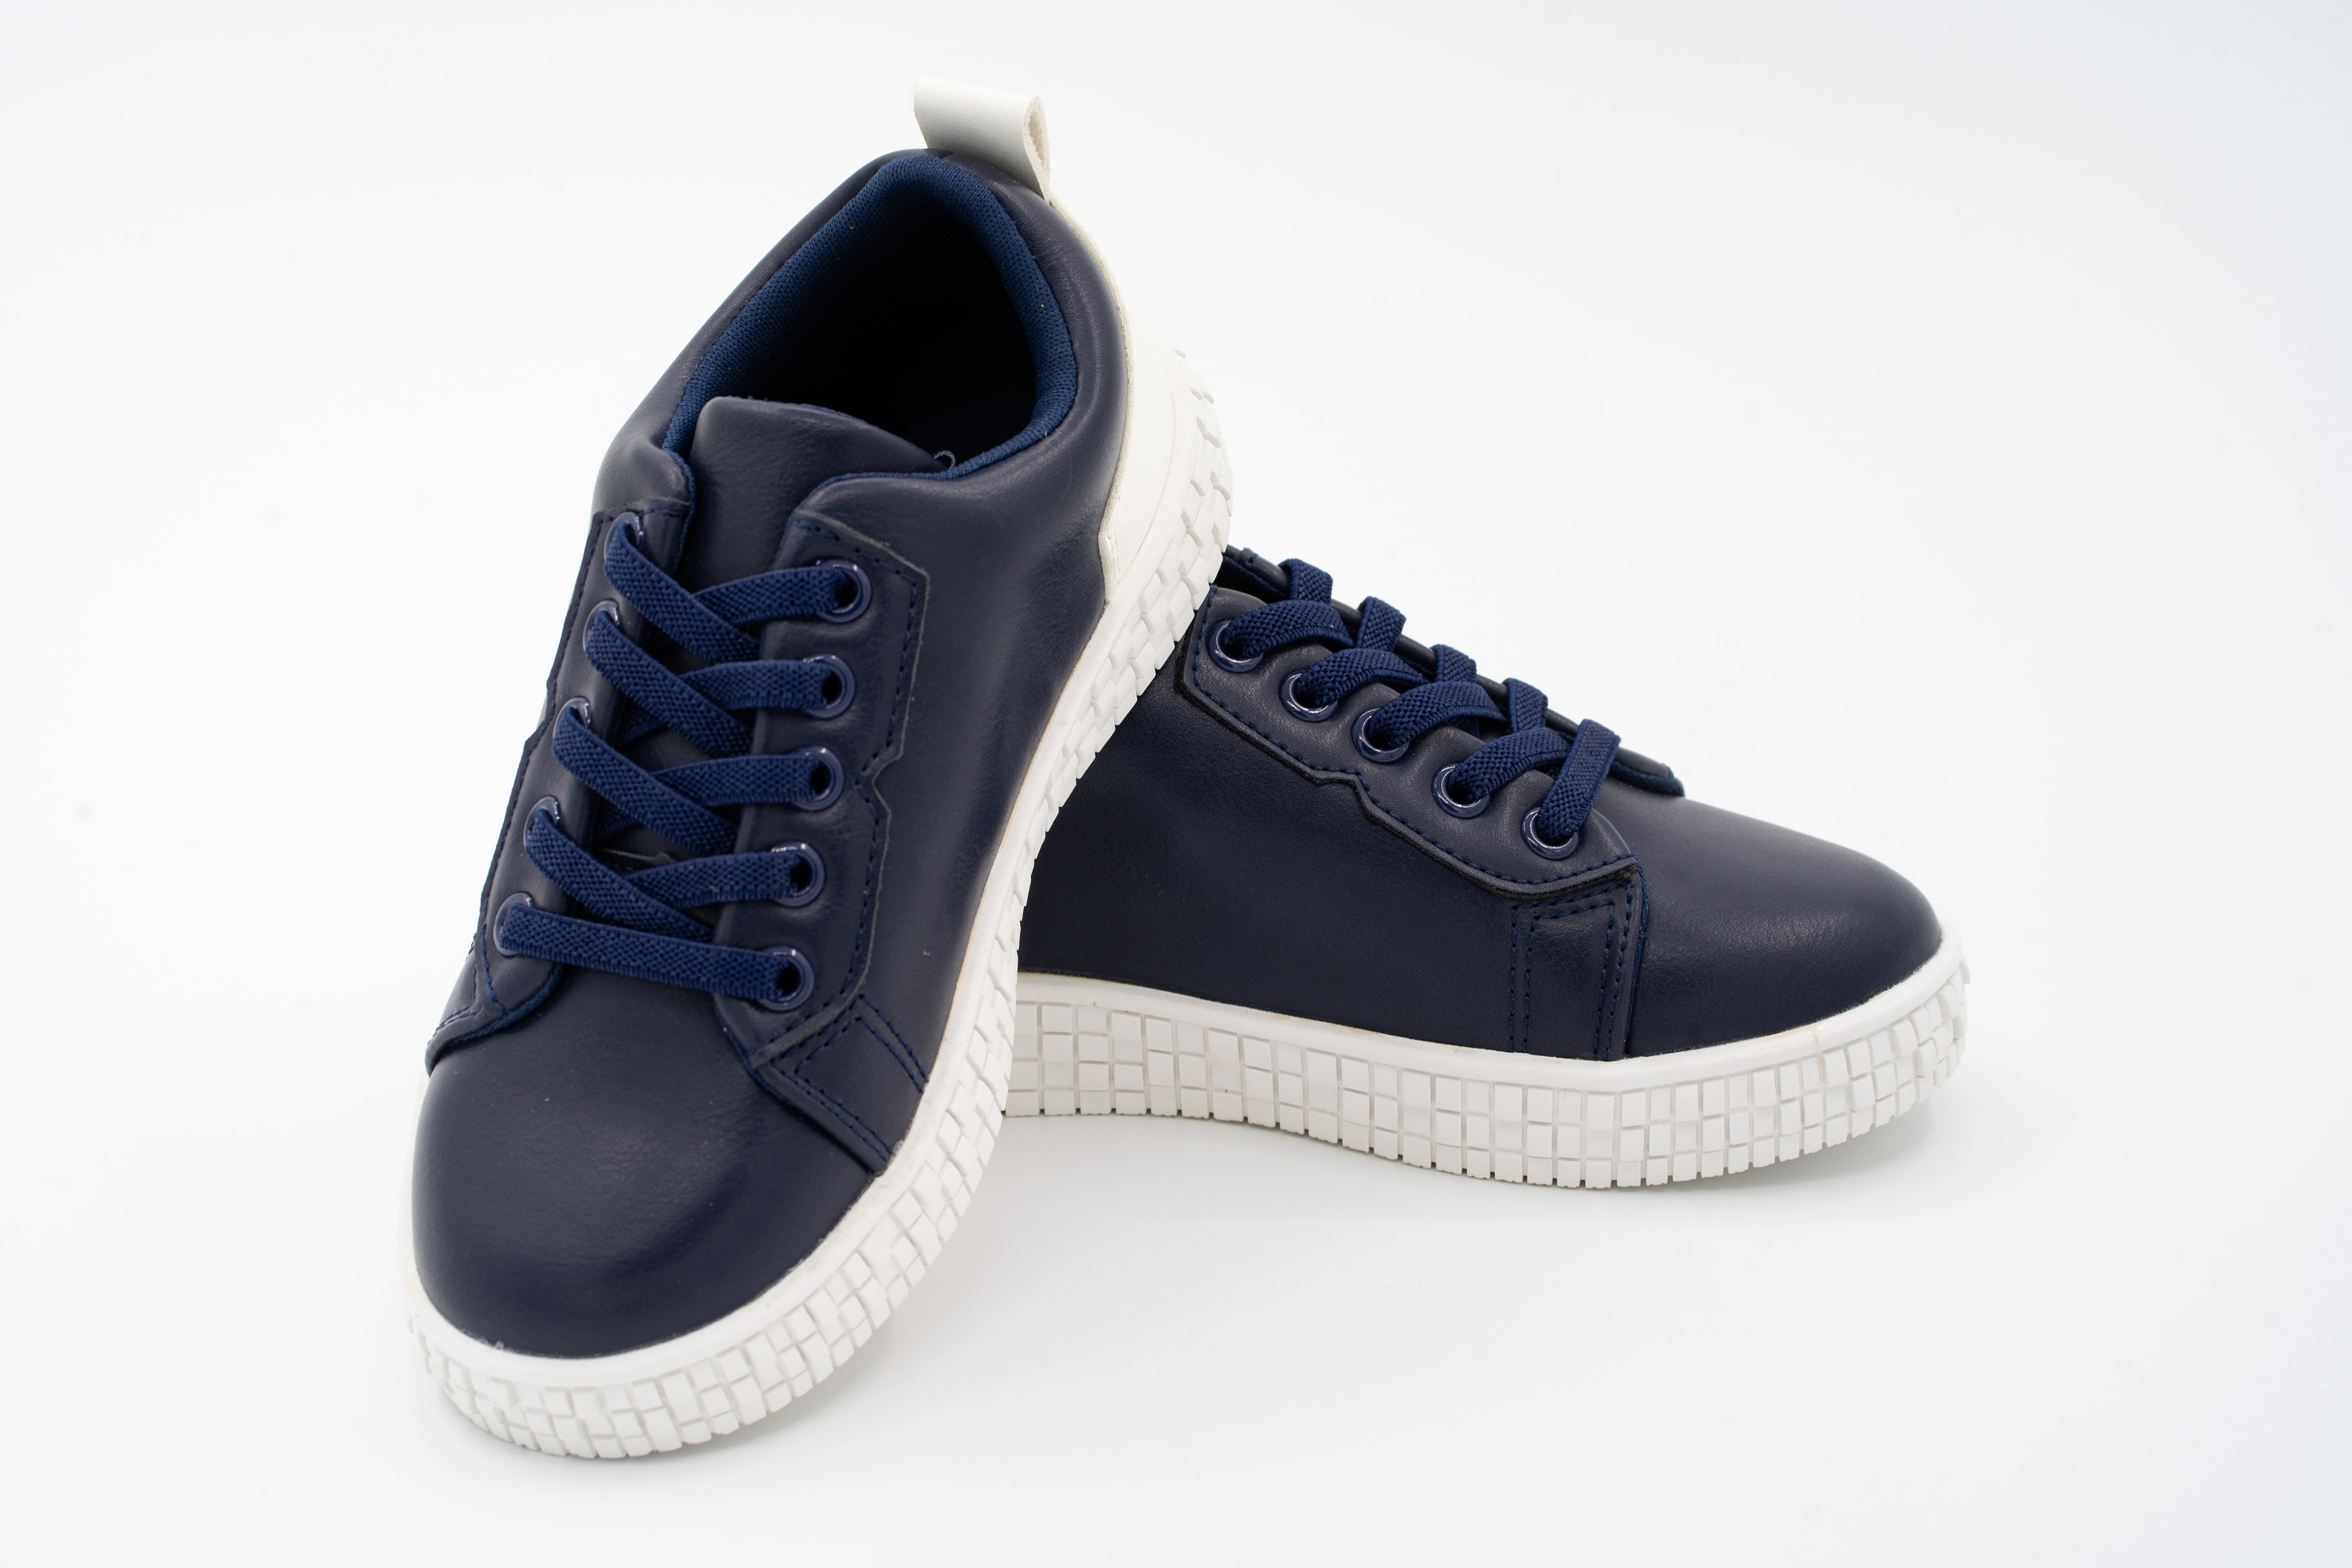 Giày Thể Thao Sneaker Bé Trai Bé Gái Đi Học Cổ Thấp Crown Space UK Active CRUK253 Cho Trẻ em Chất Liệu  Cao Cấp  Siêu Nhẹ Êm Size 28-36/4-14 Tuổi